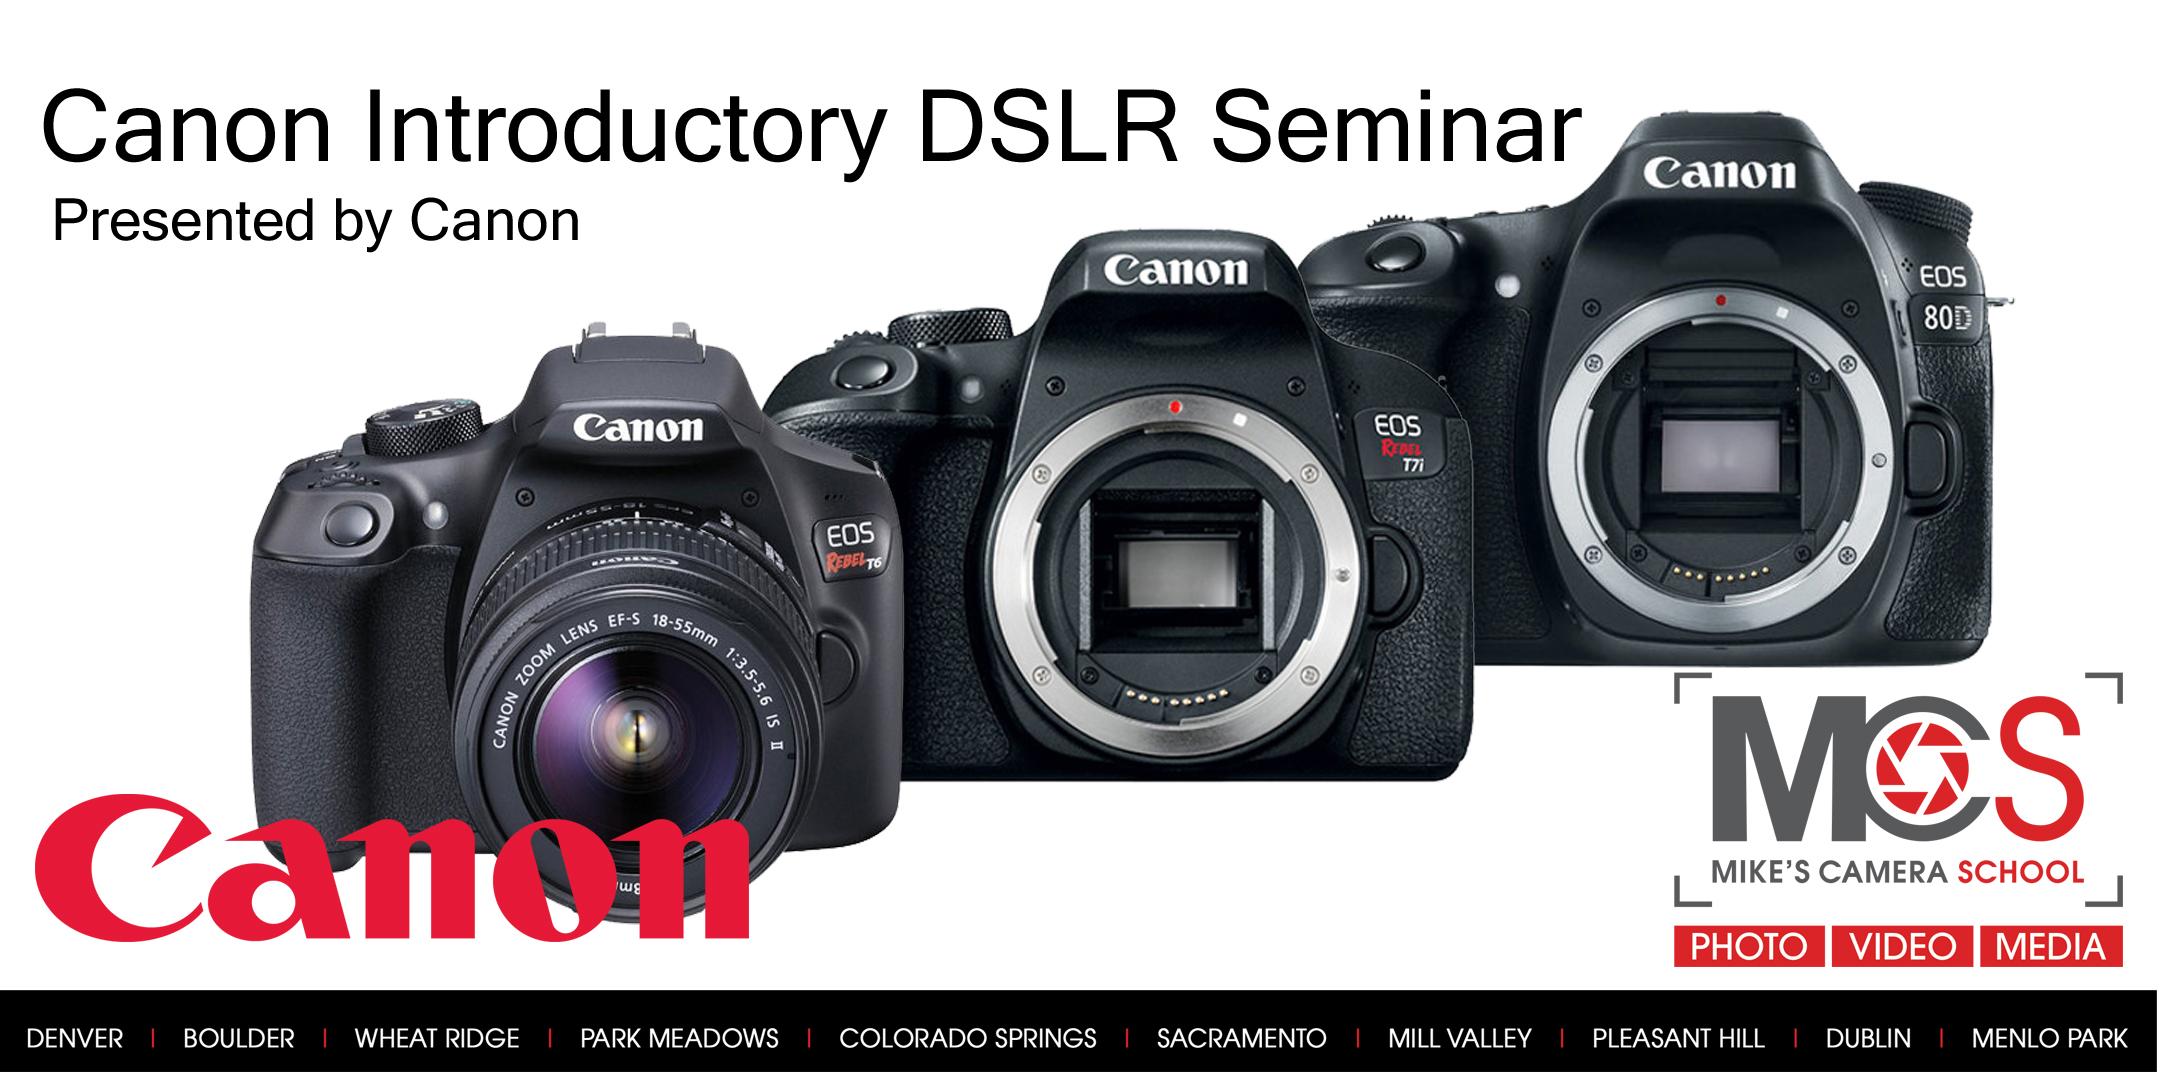 Canon EOS DSLR Camera Seminar Presented by Canon- Denver